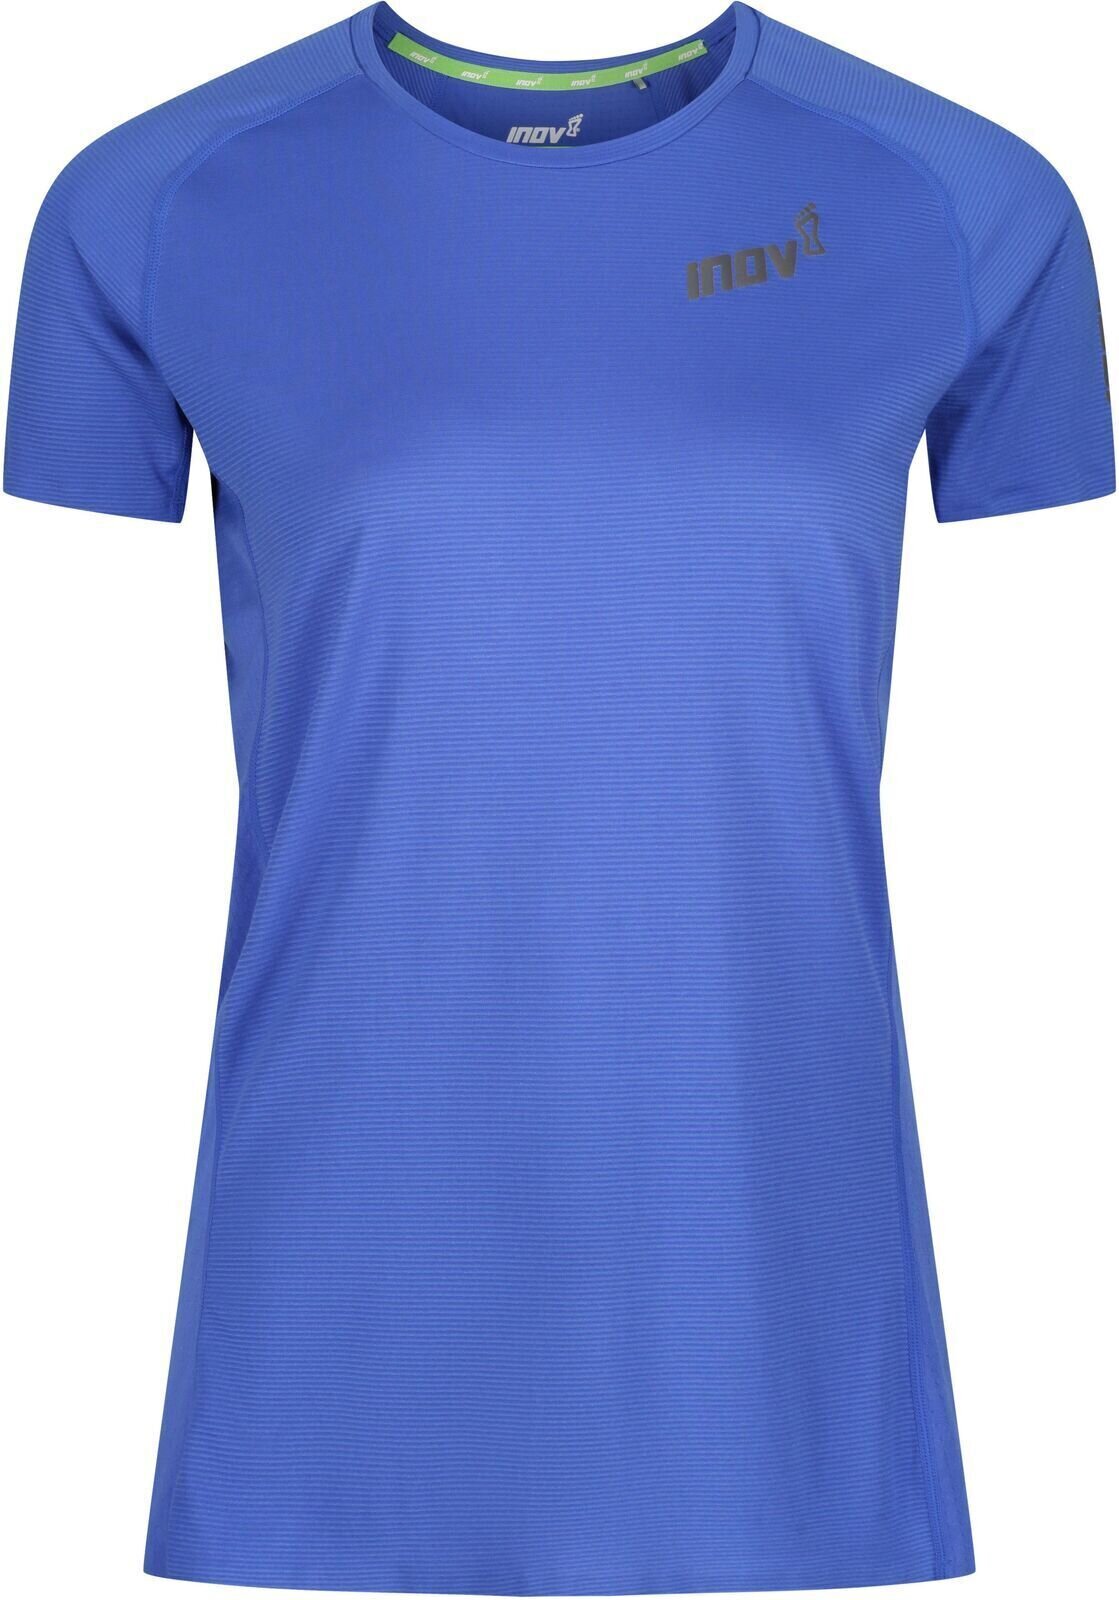 Koszulka do biegania z krótkim rękawem
 Inov-8 Baso Elite Blue 38 Koszulka do biegania z krótkim rękawem